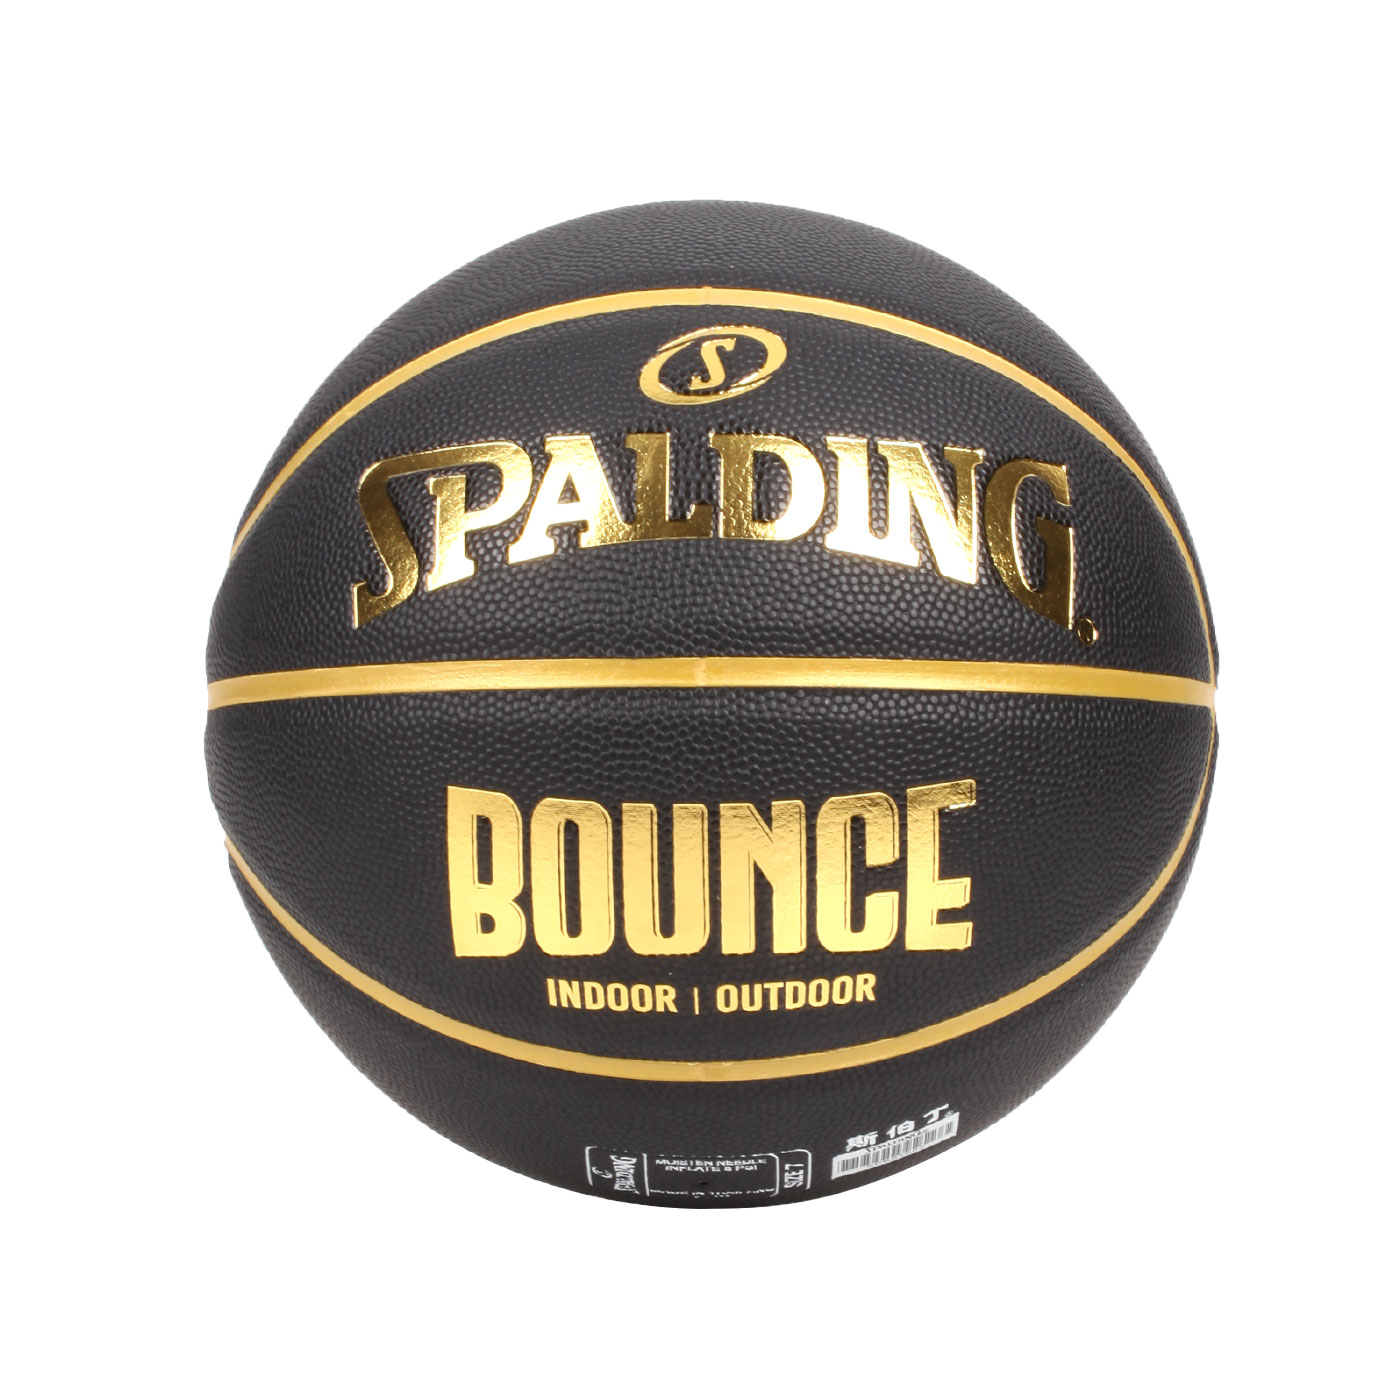 SPALDING Bounce 籃球-PU SPB91003